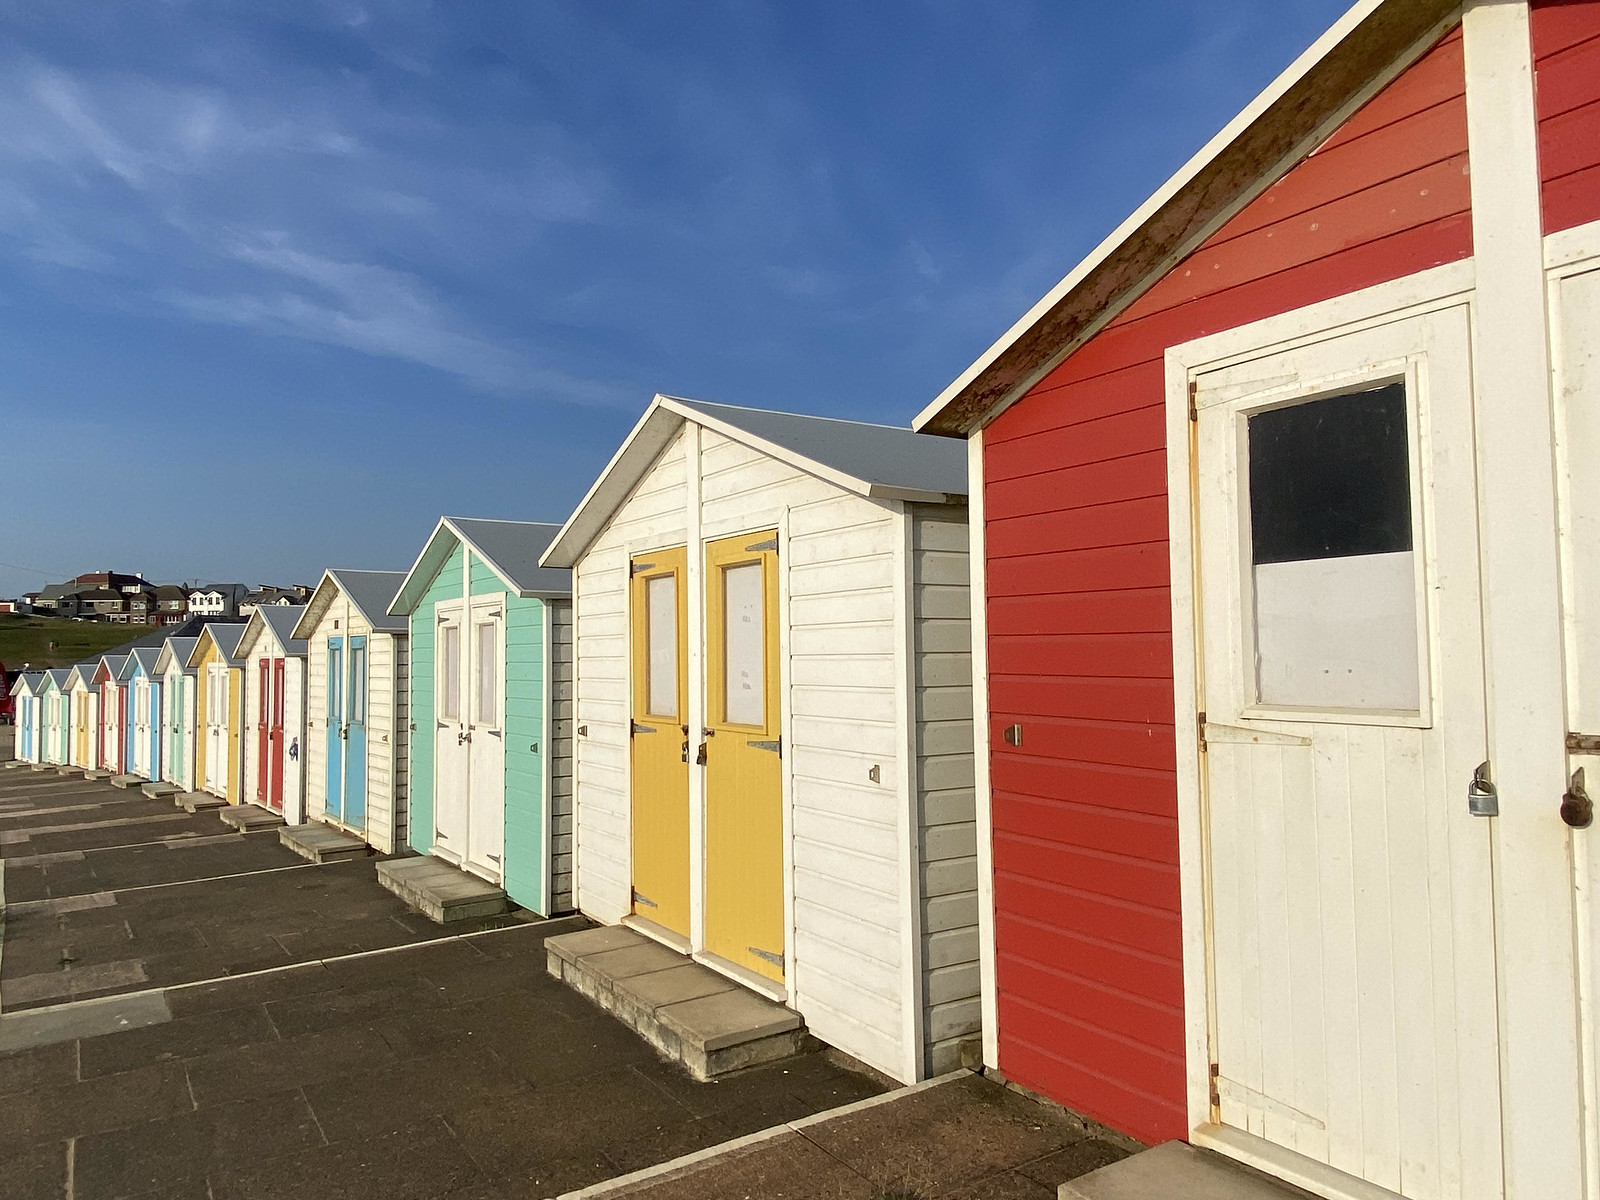 Colourful beach huts at Bude, Cornwall, England